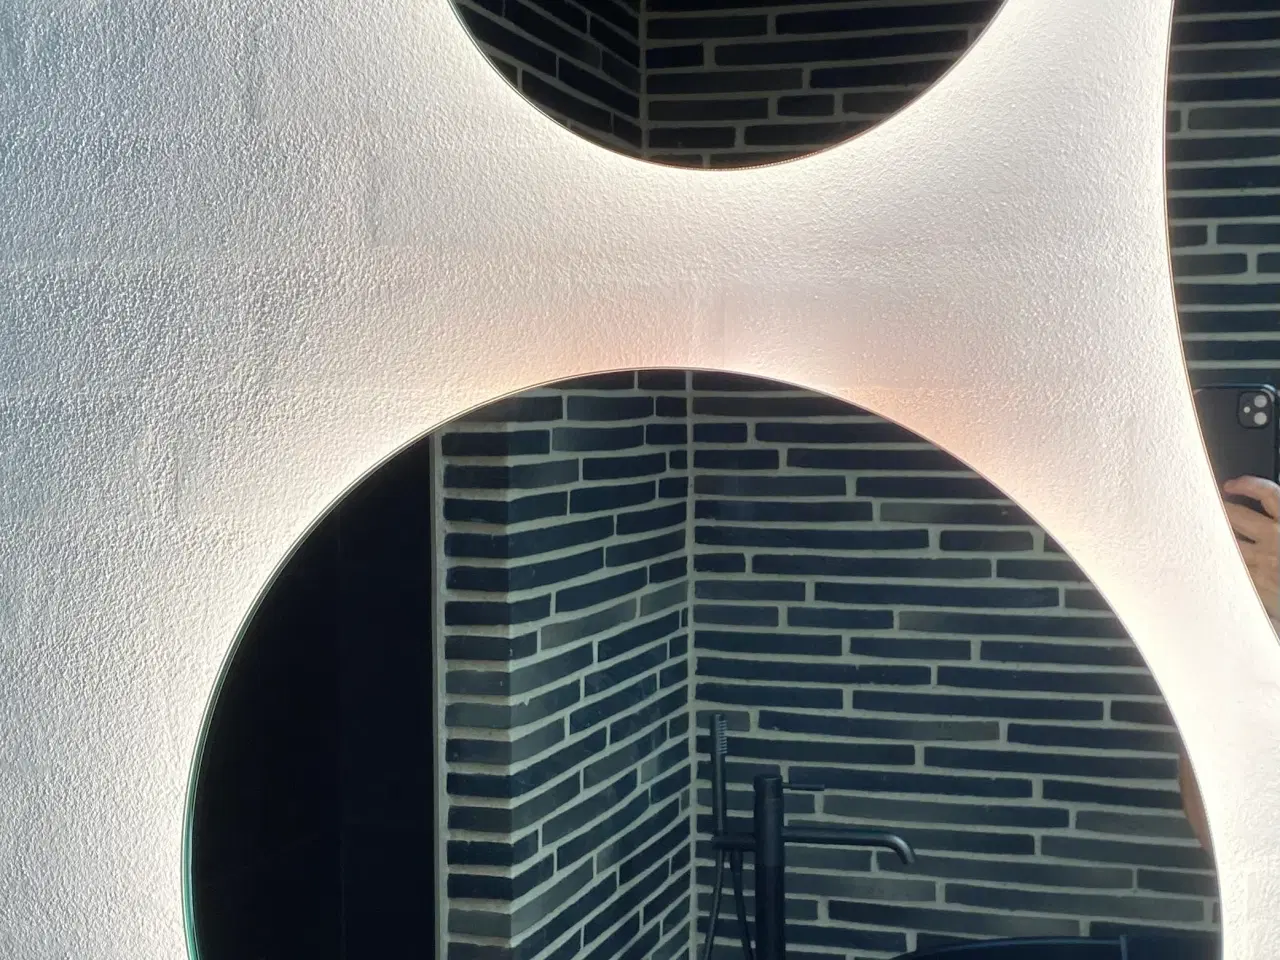 Billede 3 - 2 runde spejle med indbygget LED lys – ingen kant